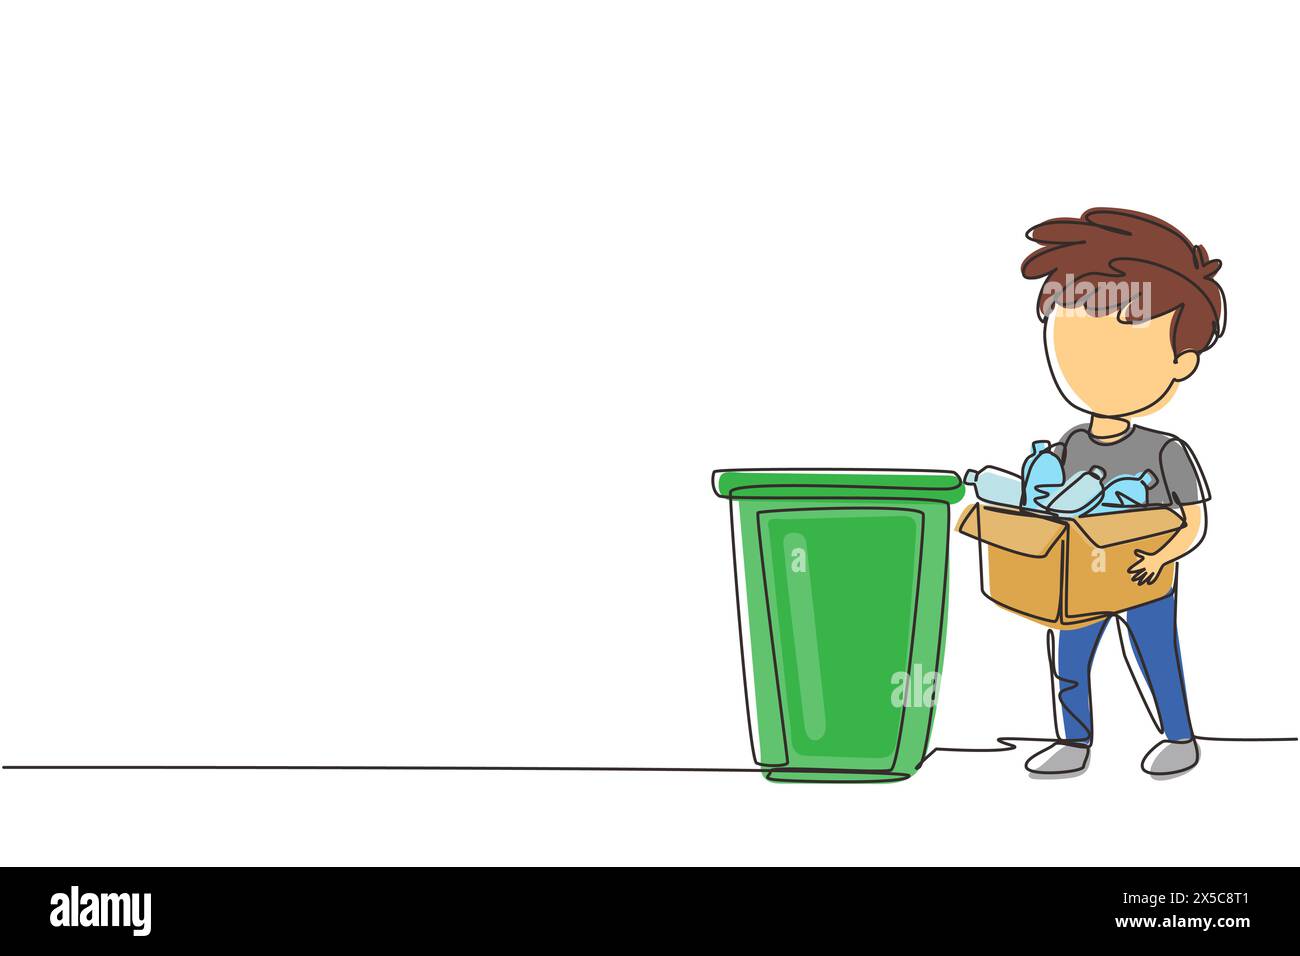 Dessin continu d'une ligne garçon ramassant les ordures et les déchets plastiques pour le recyclage. Enfant ramassant des bouteilles en plastique dans les ordures. Recyclage des déchets pour Re Illustration de Vecteur